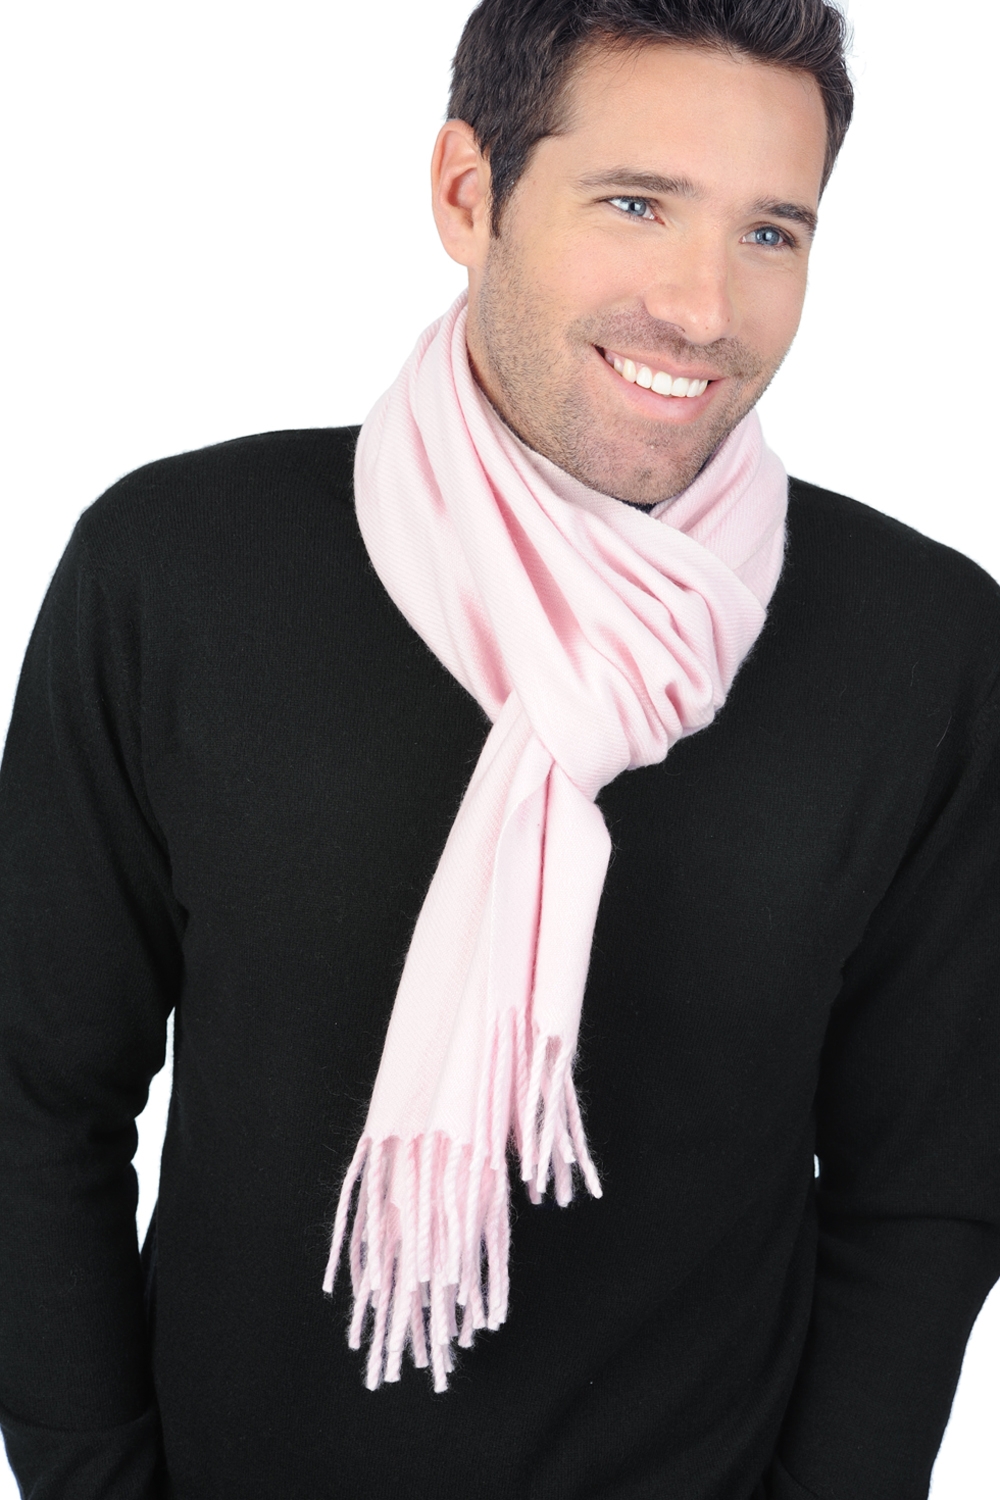 Kasjmier dames kasjmier sjaals zak200 baby roze 200 x 35 cm